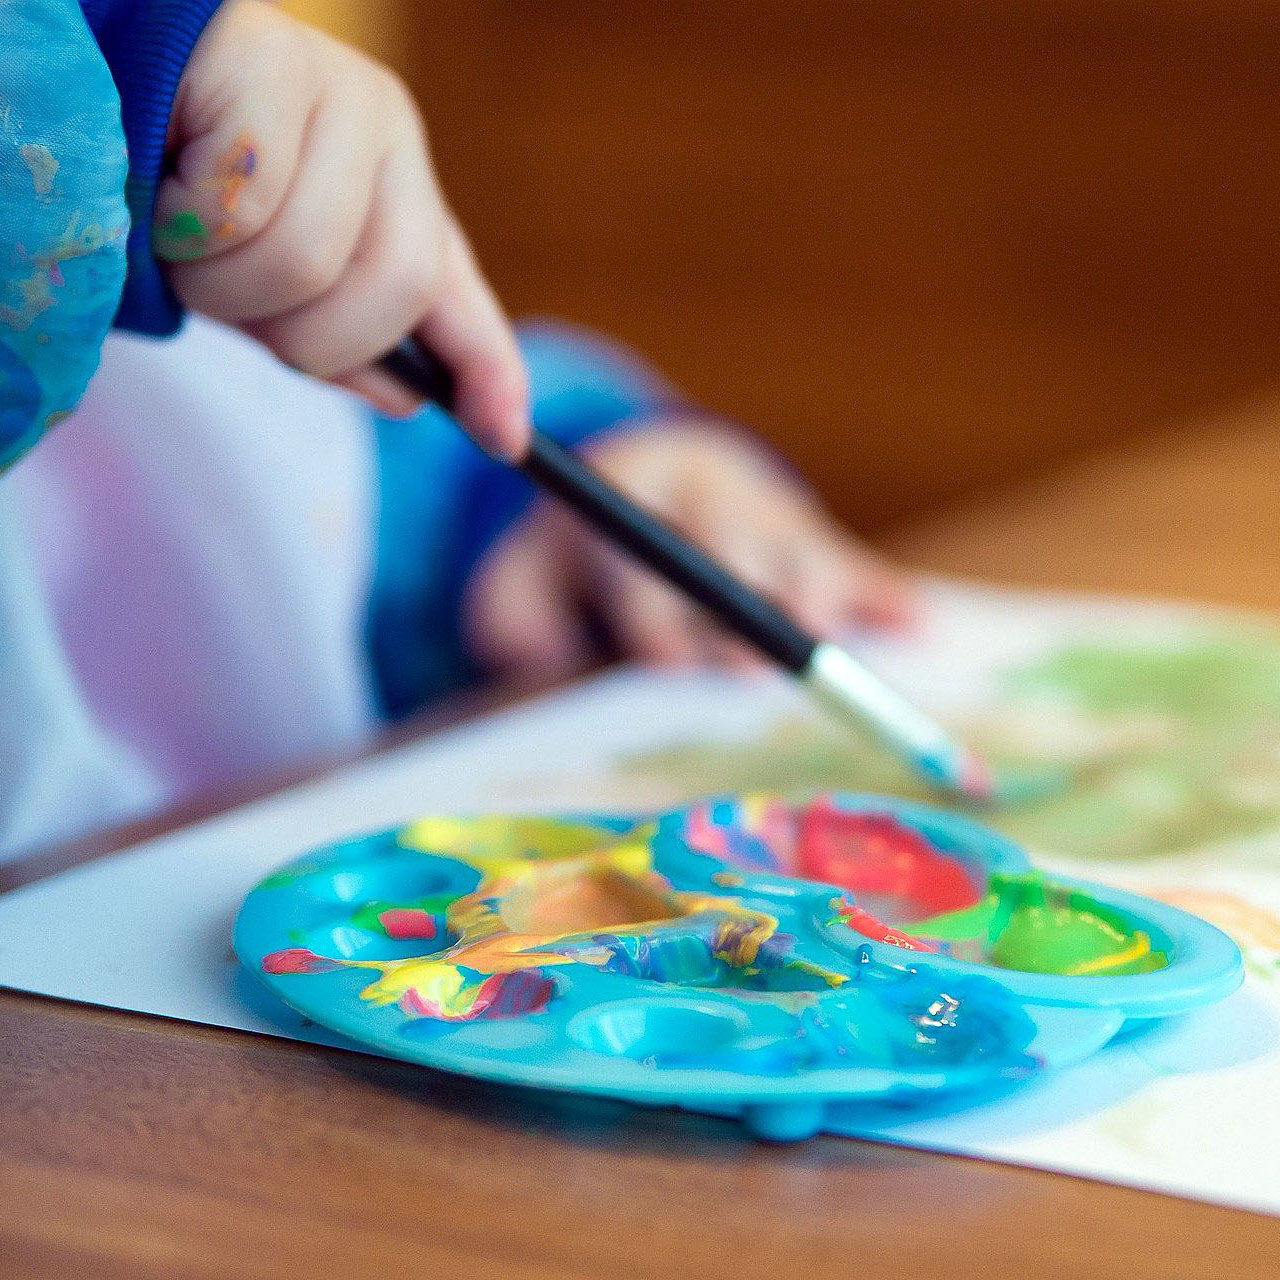 Kind malt mit Pinsel und Farbe ein Bild